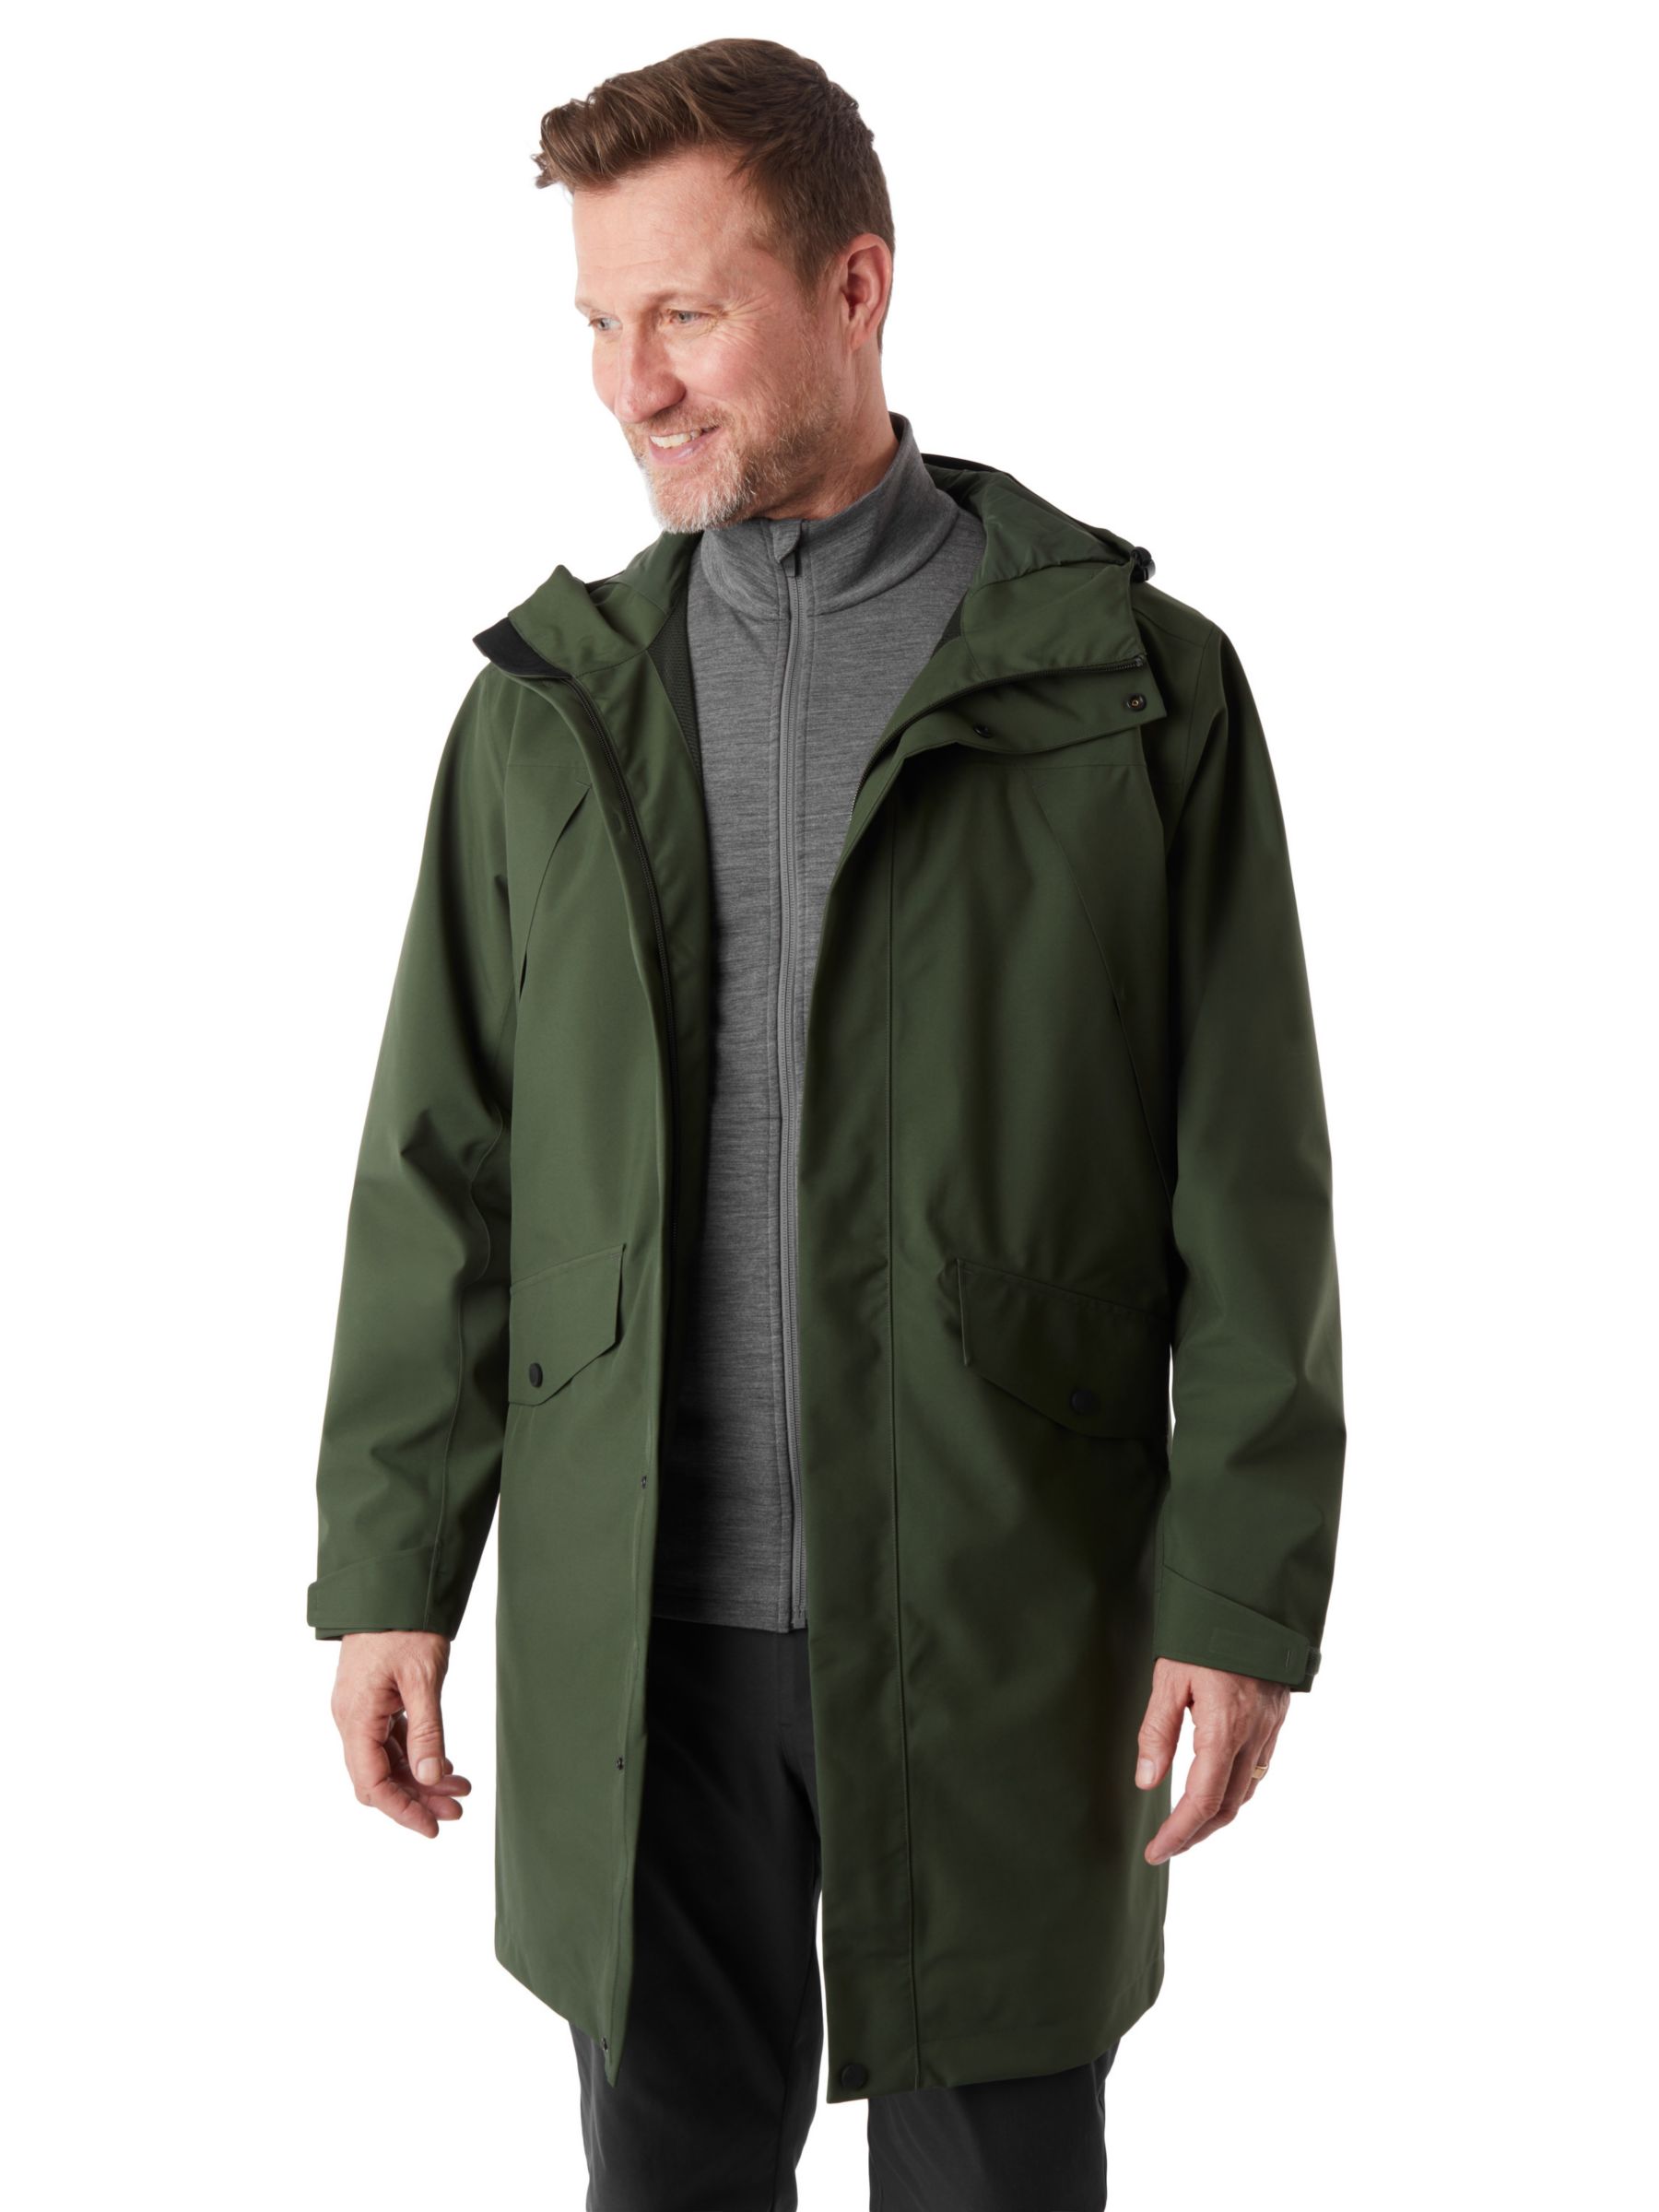 Rohan Kendal Men's Waterproof Jacket, Conifer Green, S